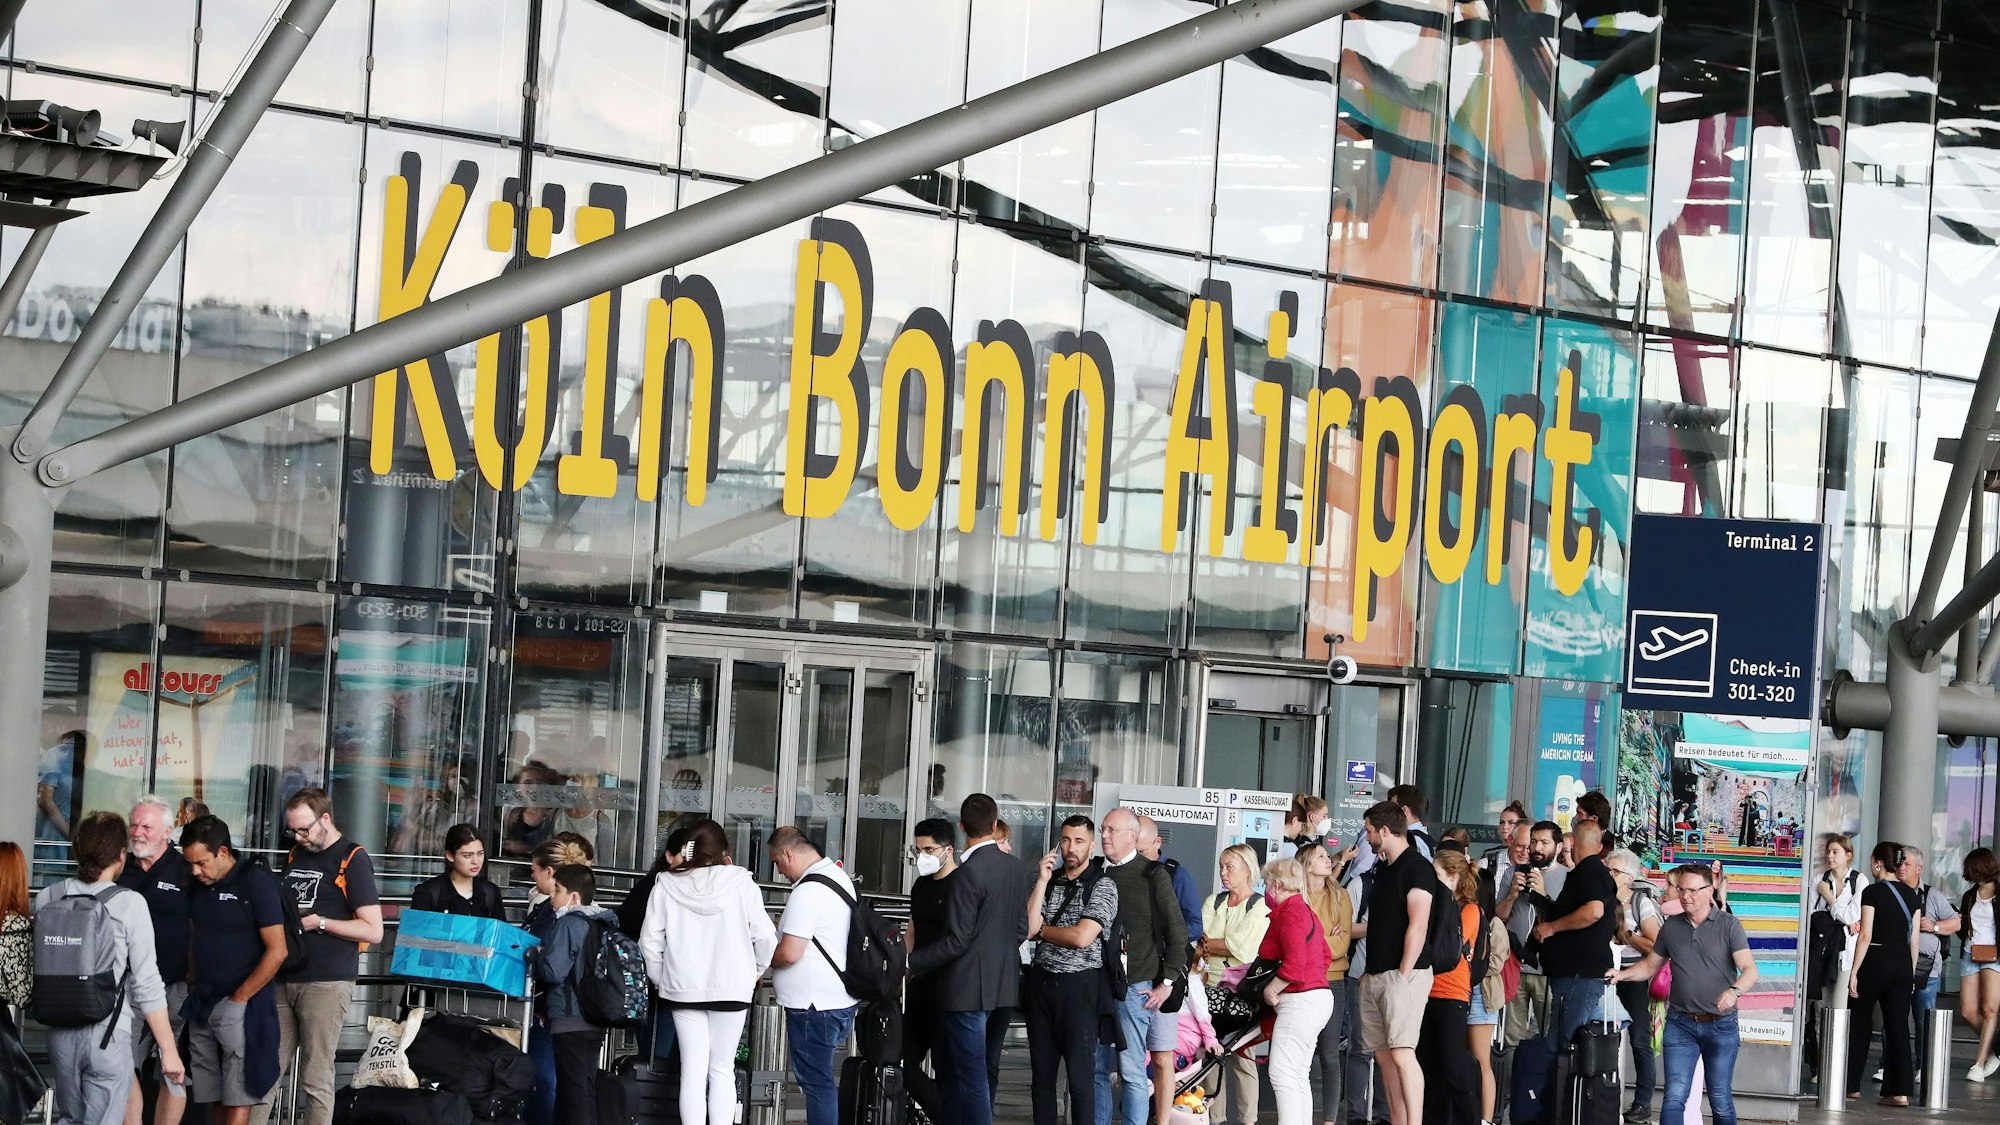 Flughafen Köln Bonn, Fluggäste in der Warteschlange, die bis vor das Flughafengebäude reicht, 01.07.2022, Bild: Herbert Bucco

